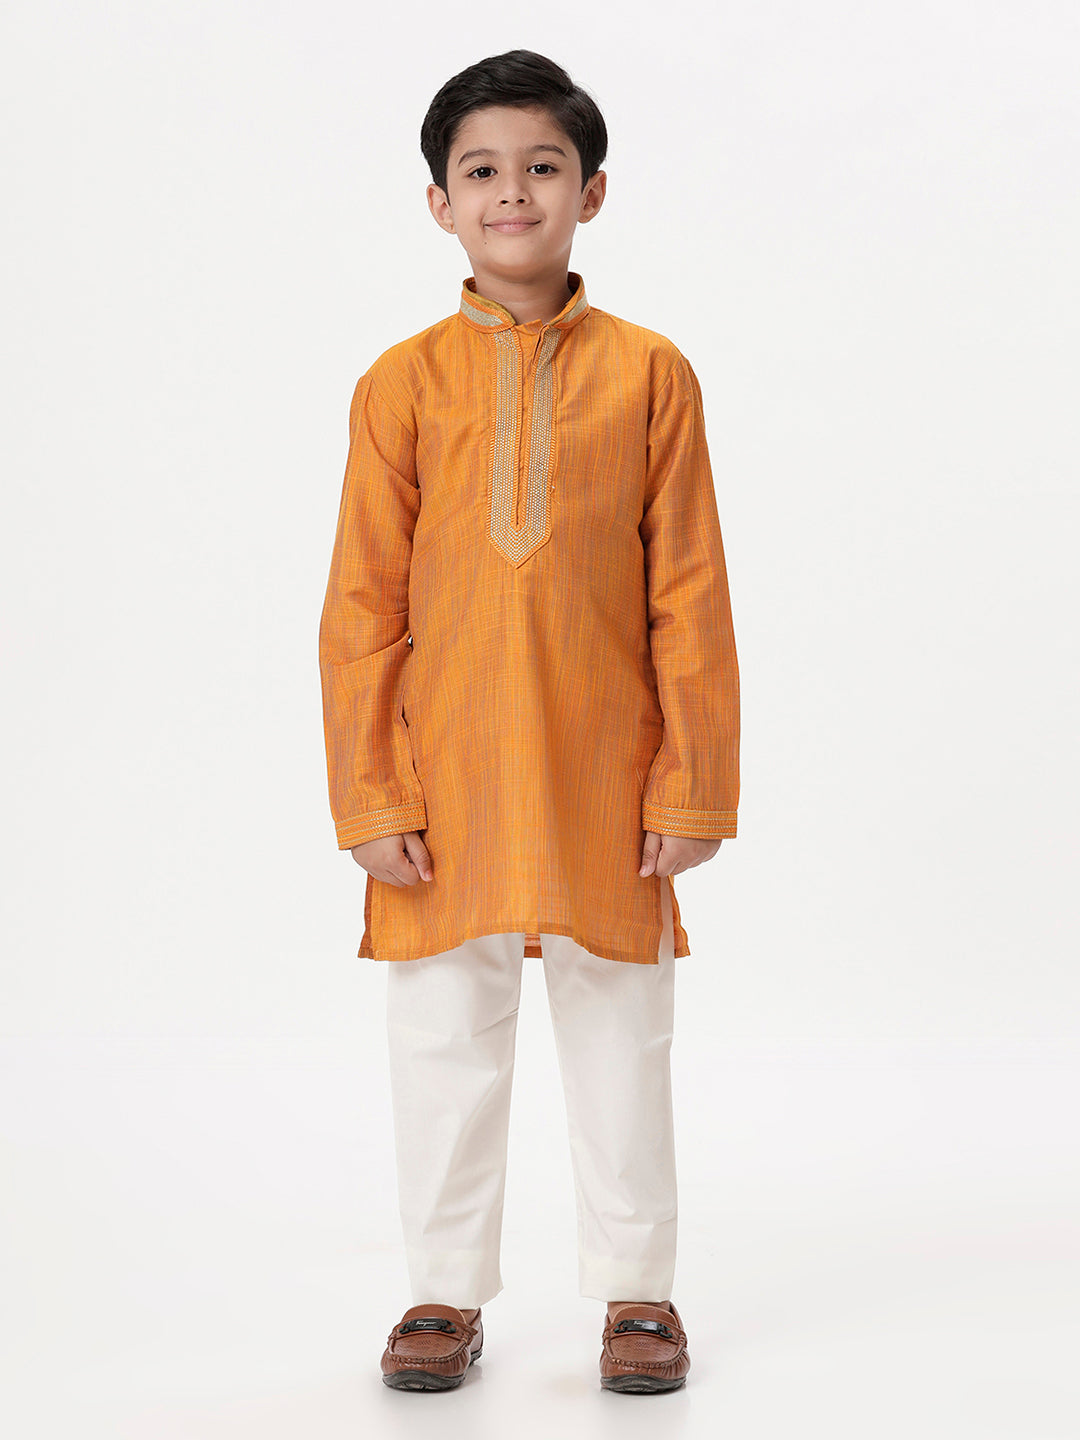 Boys Cotton Embellished Neckline Full Sleeves Orange Kurta with Pyjama Pant Combo EMD3